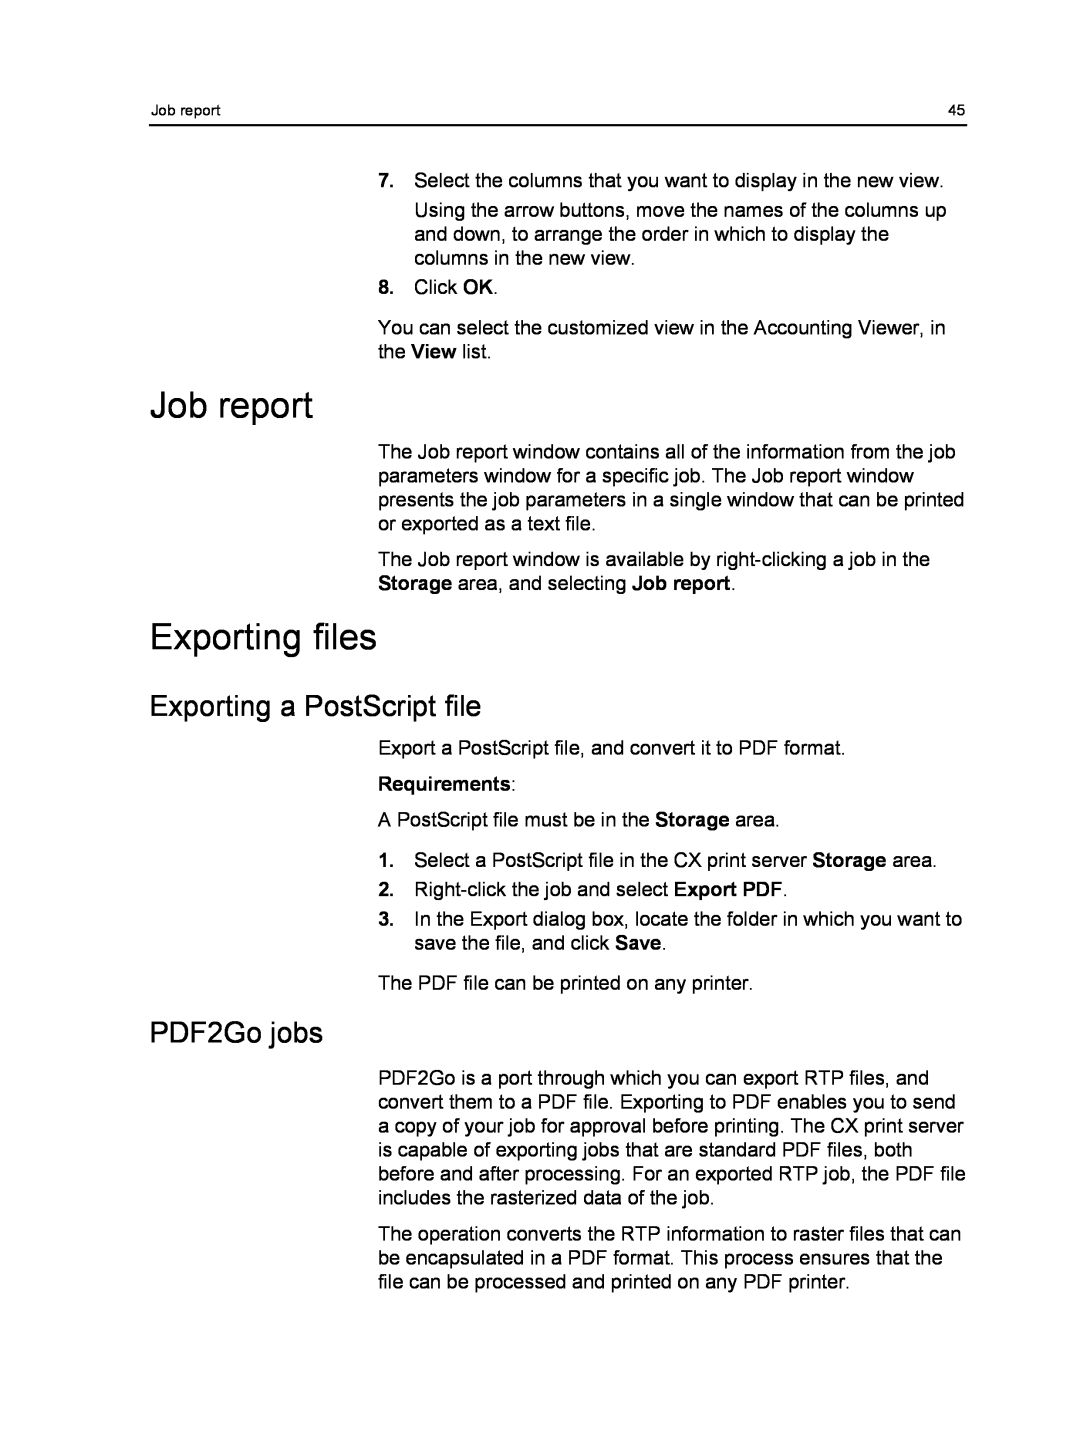 Xerox 550, 560 manual Job report, Exporting files, Exporting a PostScript file, PDF2Go jobs, Requirements 